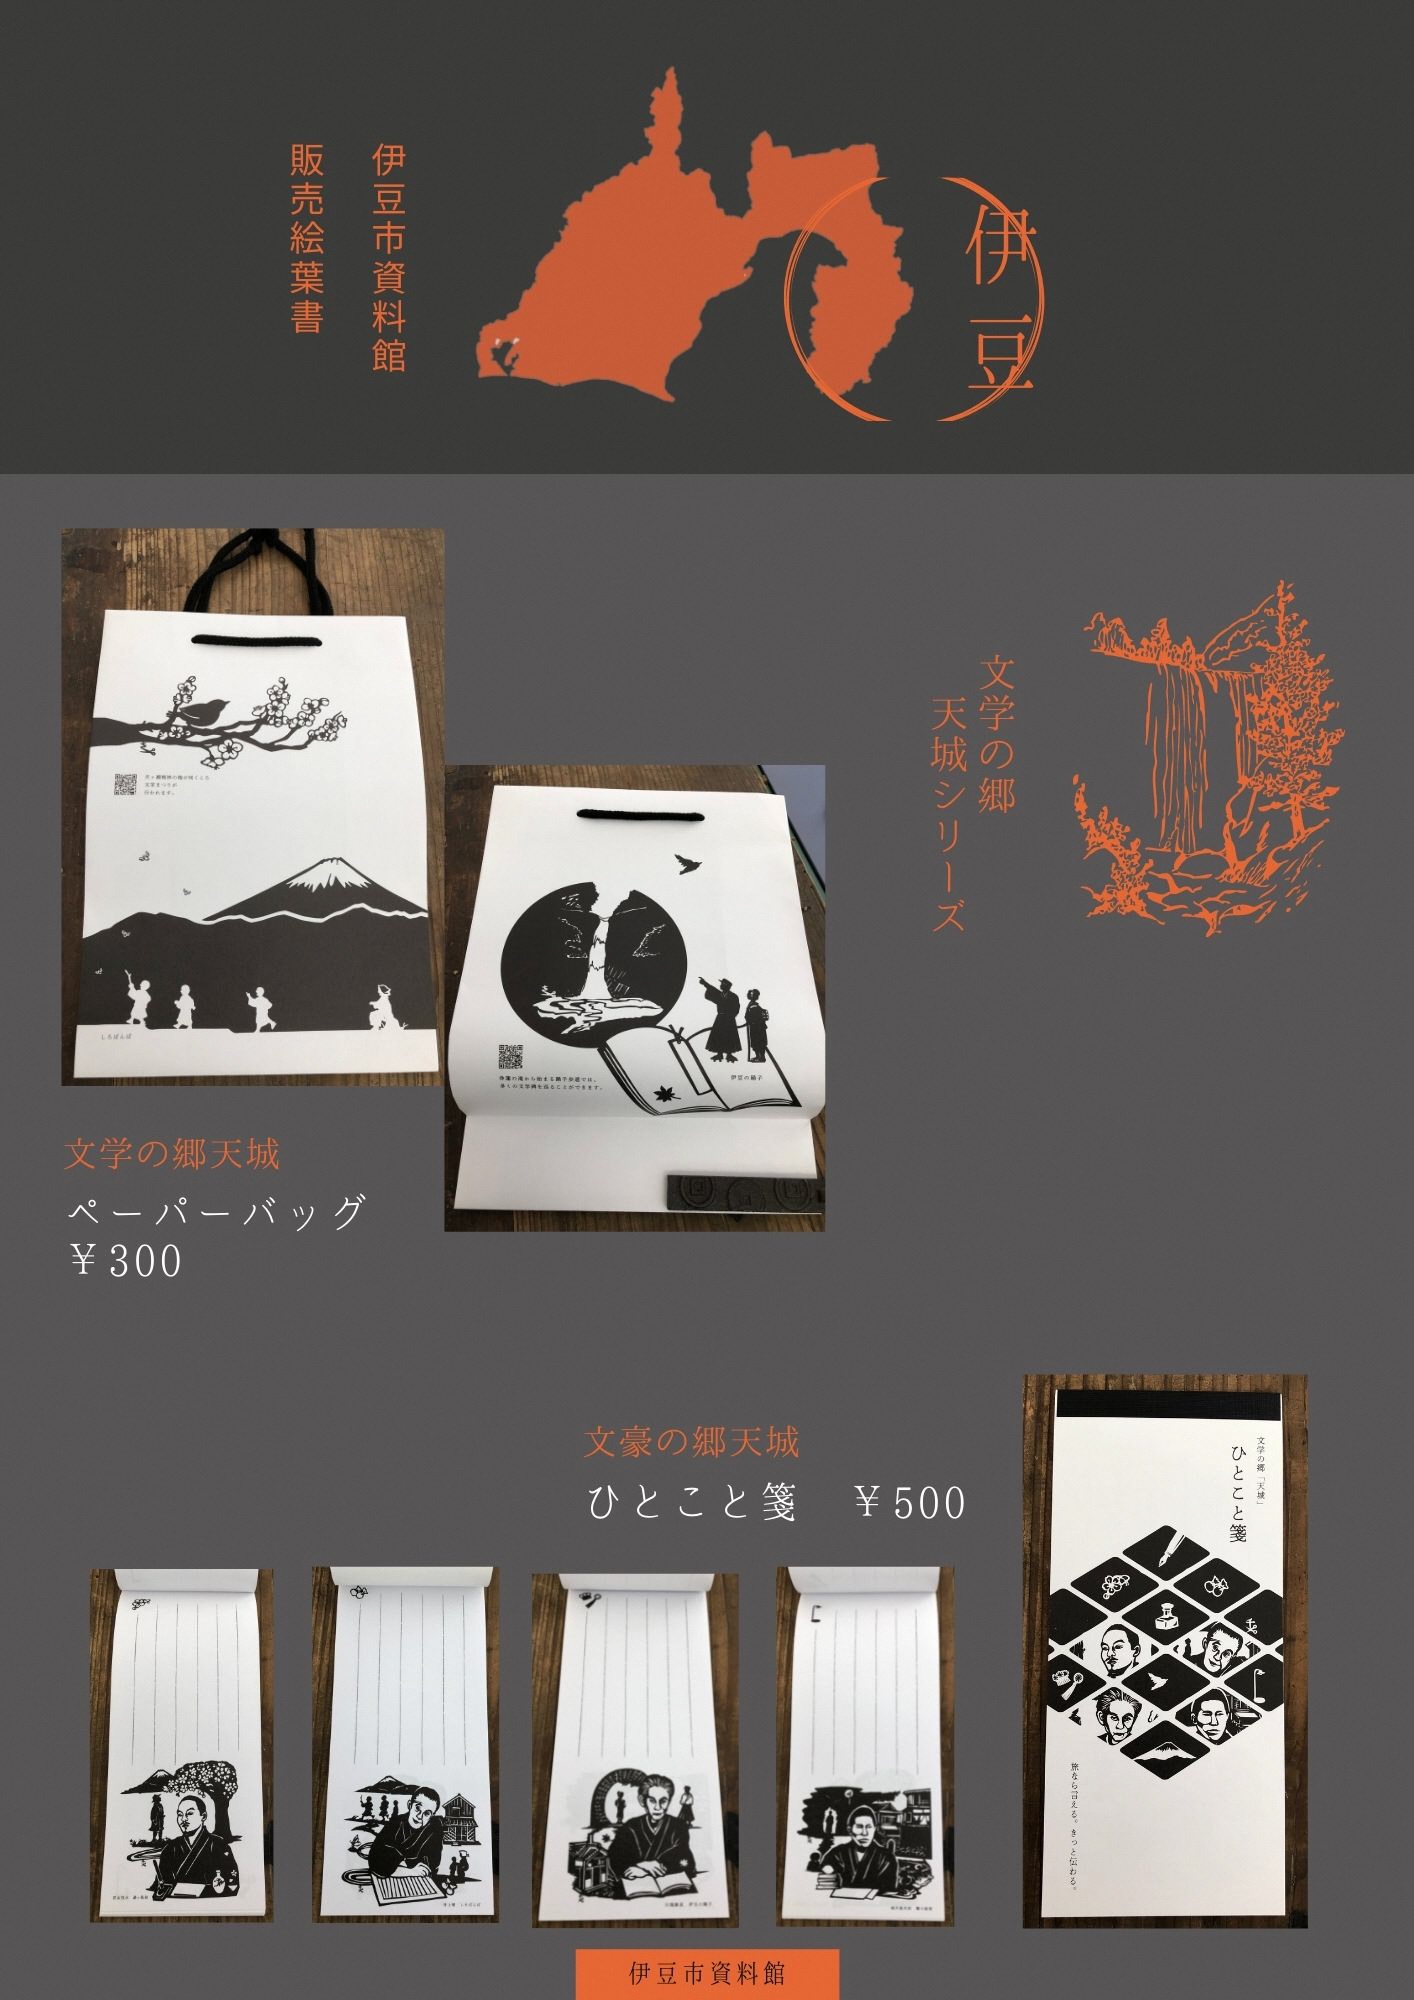 文学の郷天城シリーズのペーパーバッグとひとこと箋について紹介するポスター